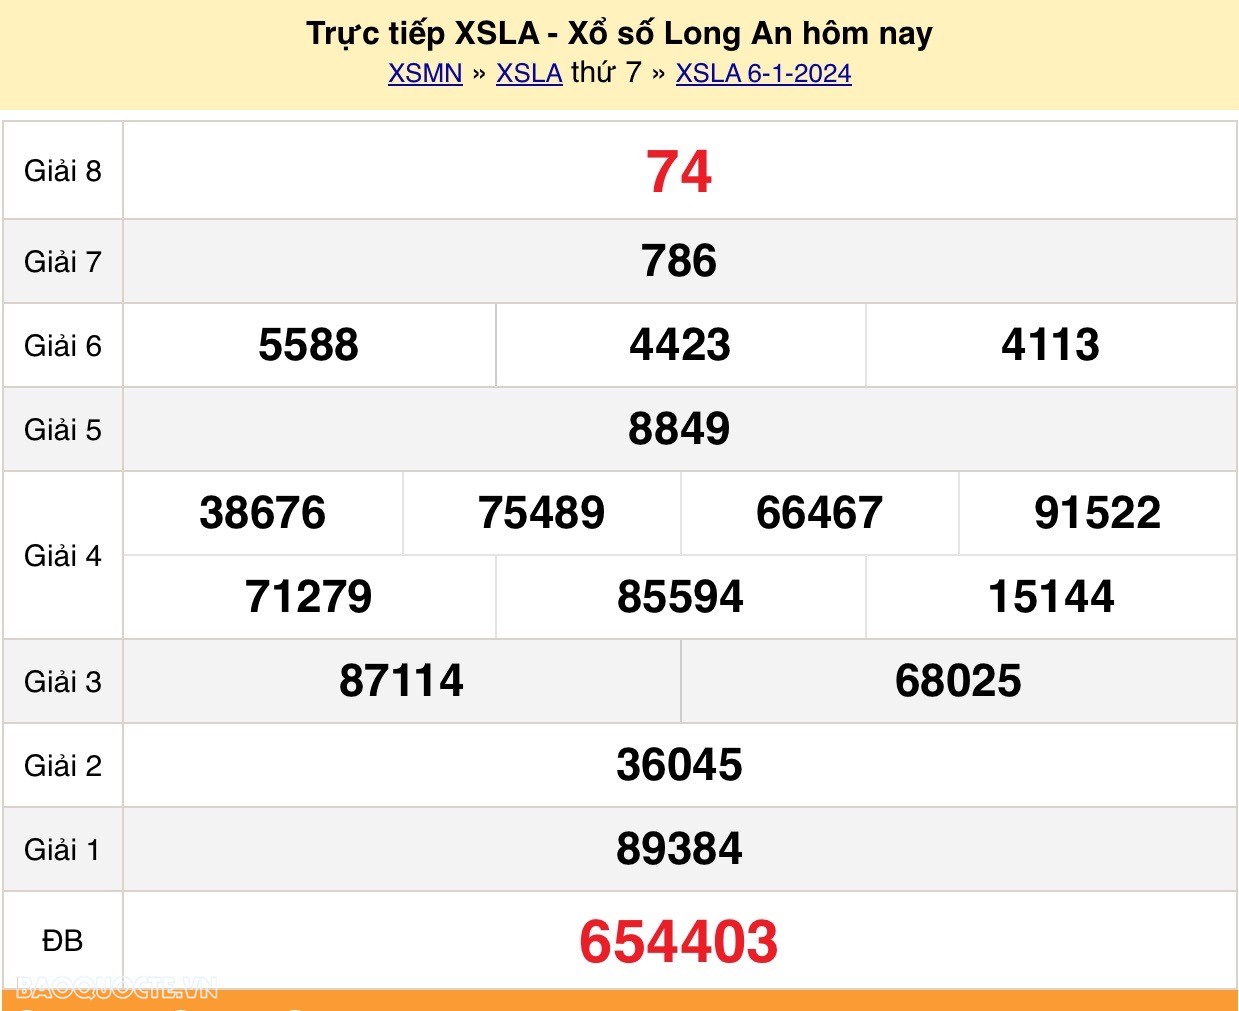 XSLA 13/1, trực tiếp kết quả xổ số Long An hôm nay 13/1/2024 - KQXSLA thứ 7